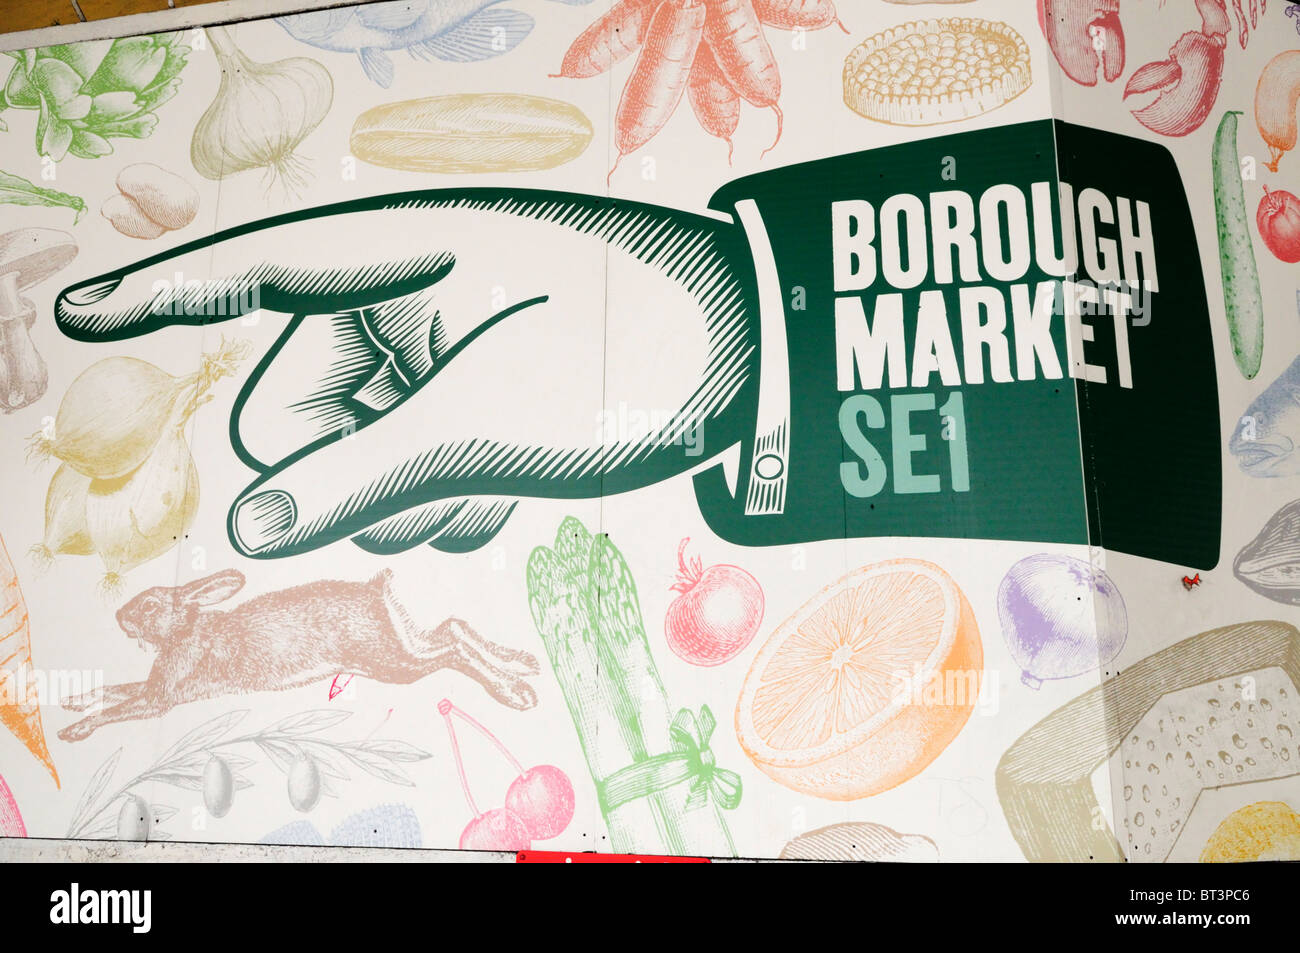 Borough Market SE1 sign, Southwark, London, England, UK Stock Photo